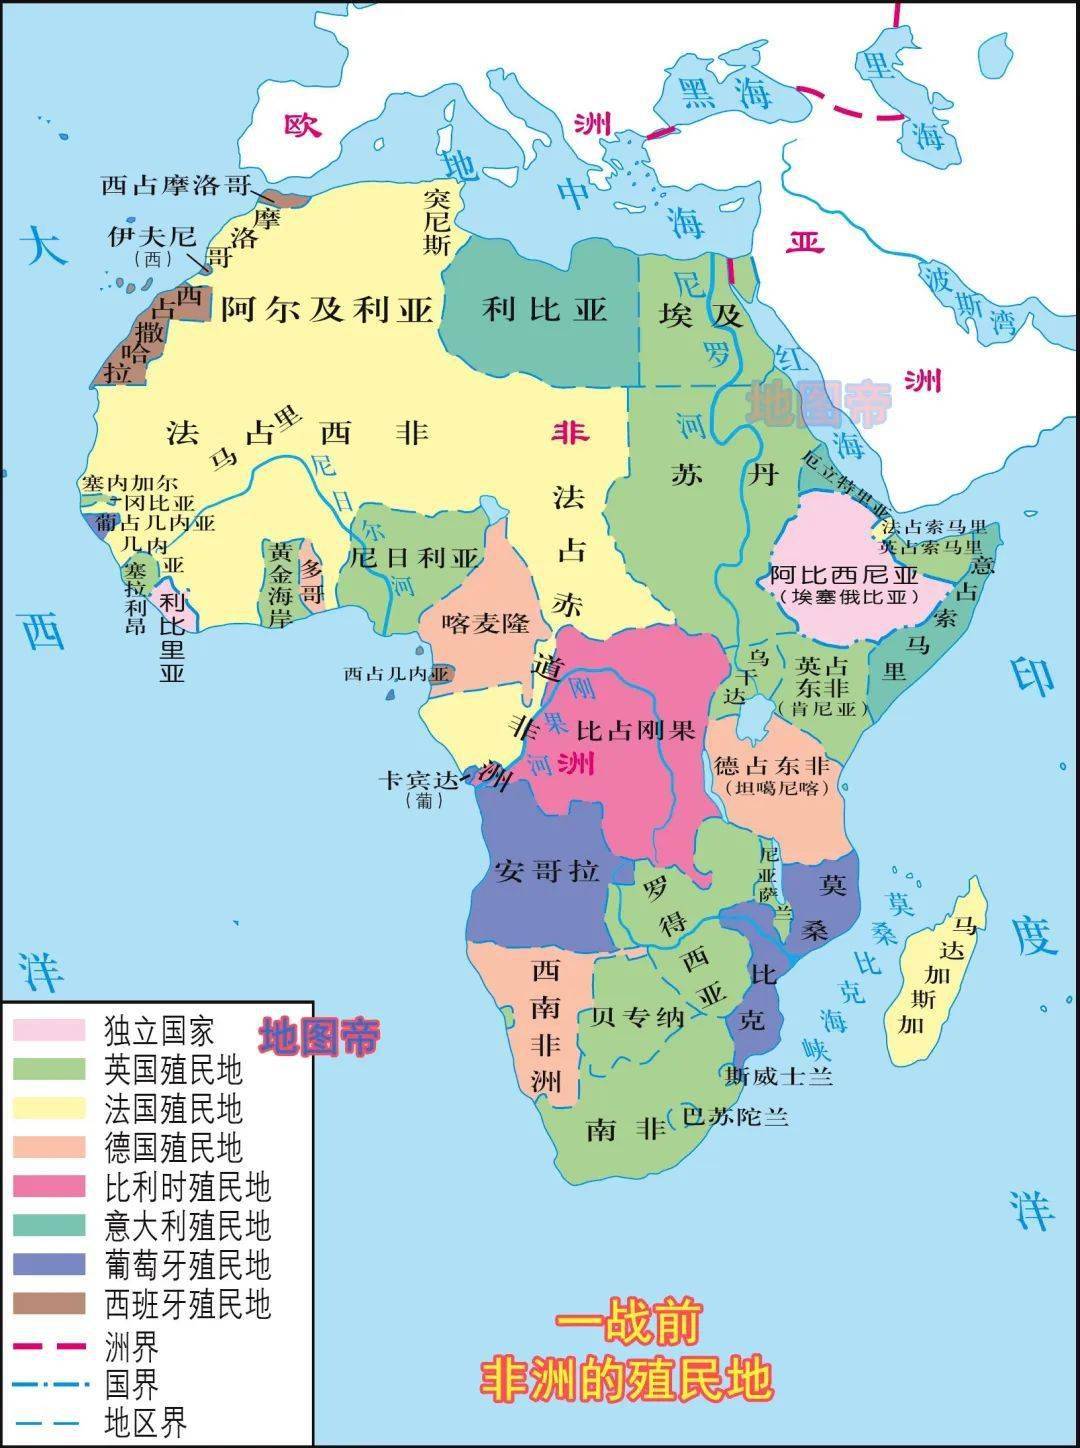 法属非洲的土地大致可分为法属北非,法属西非,法属赤道非洲和法属